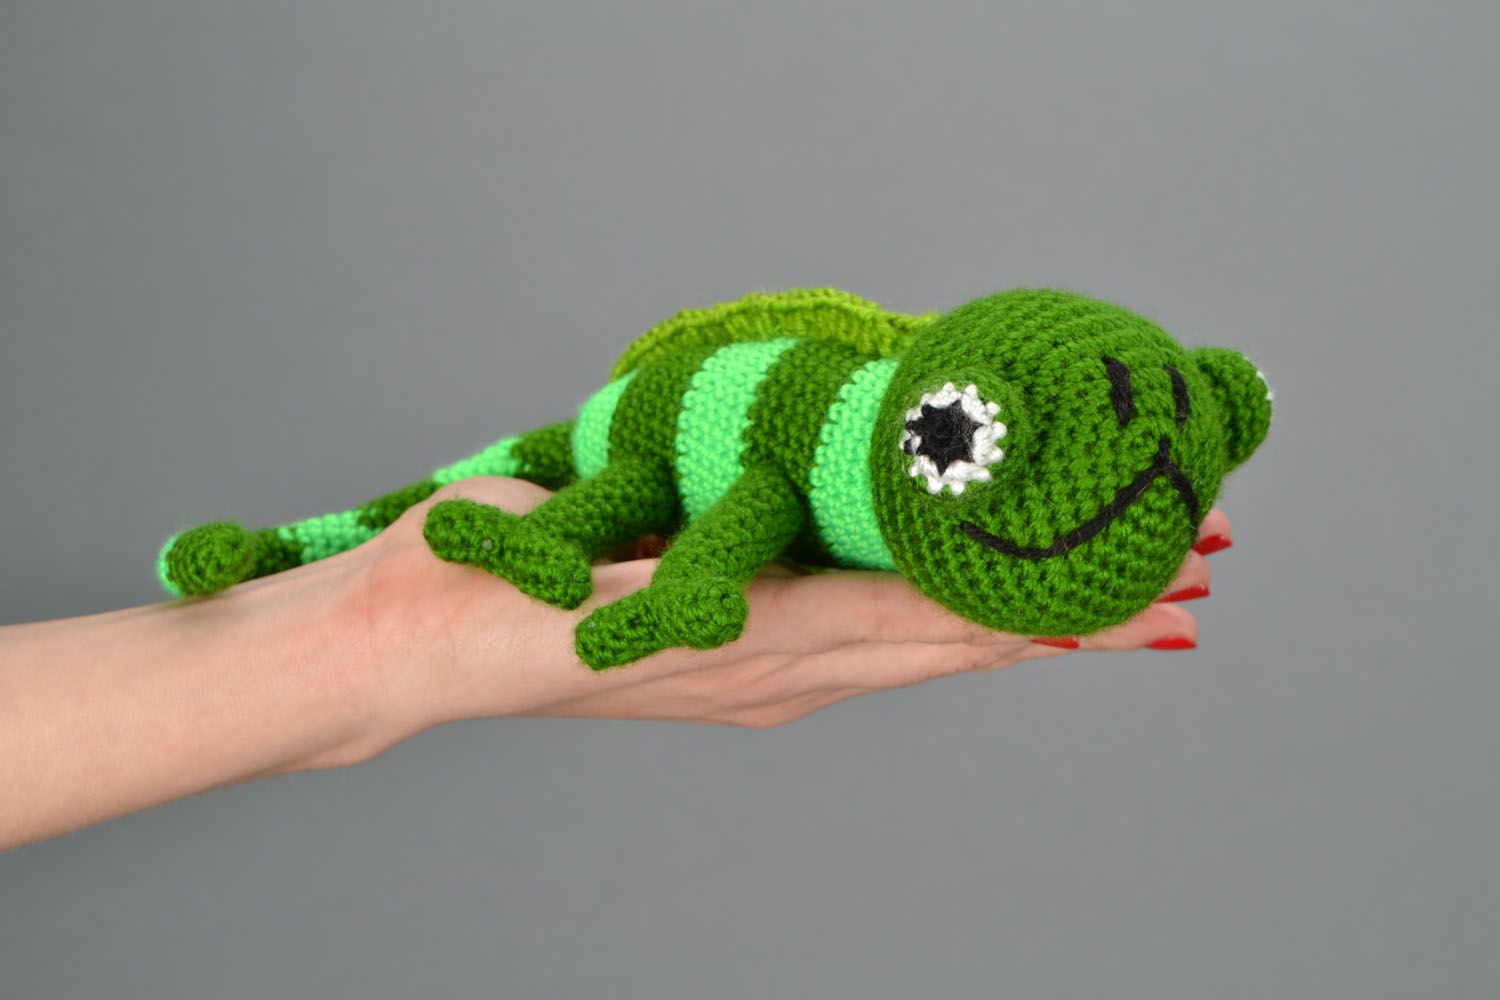 Homemade crochet toy Chameleon photo 2